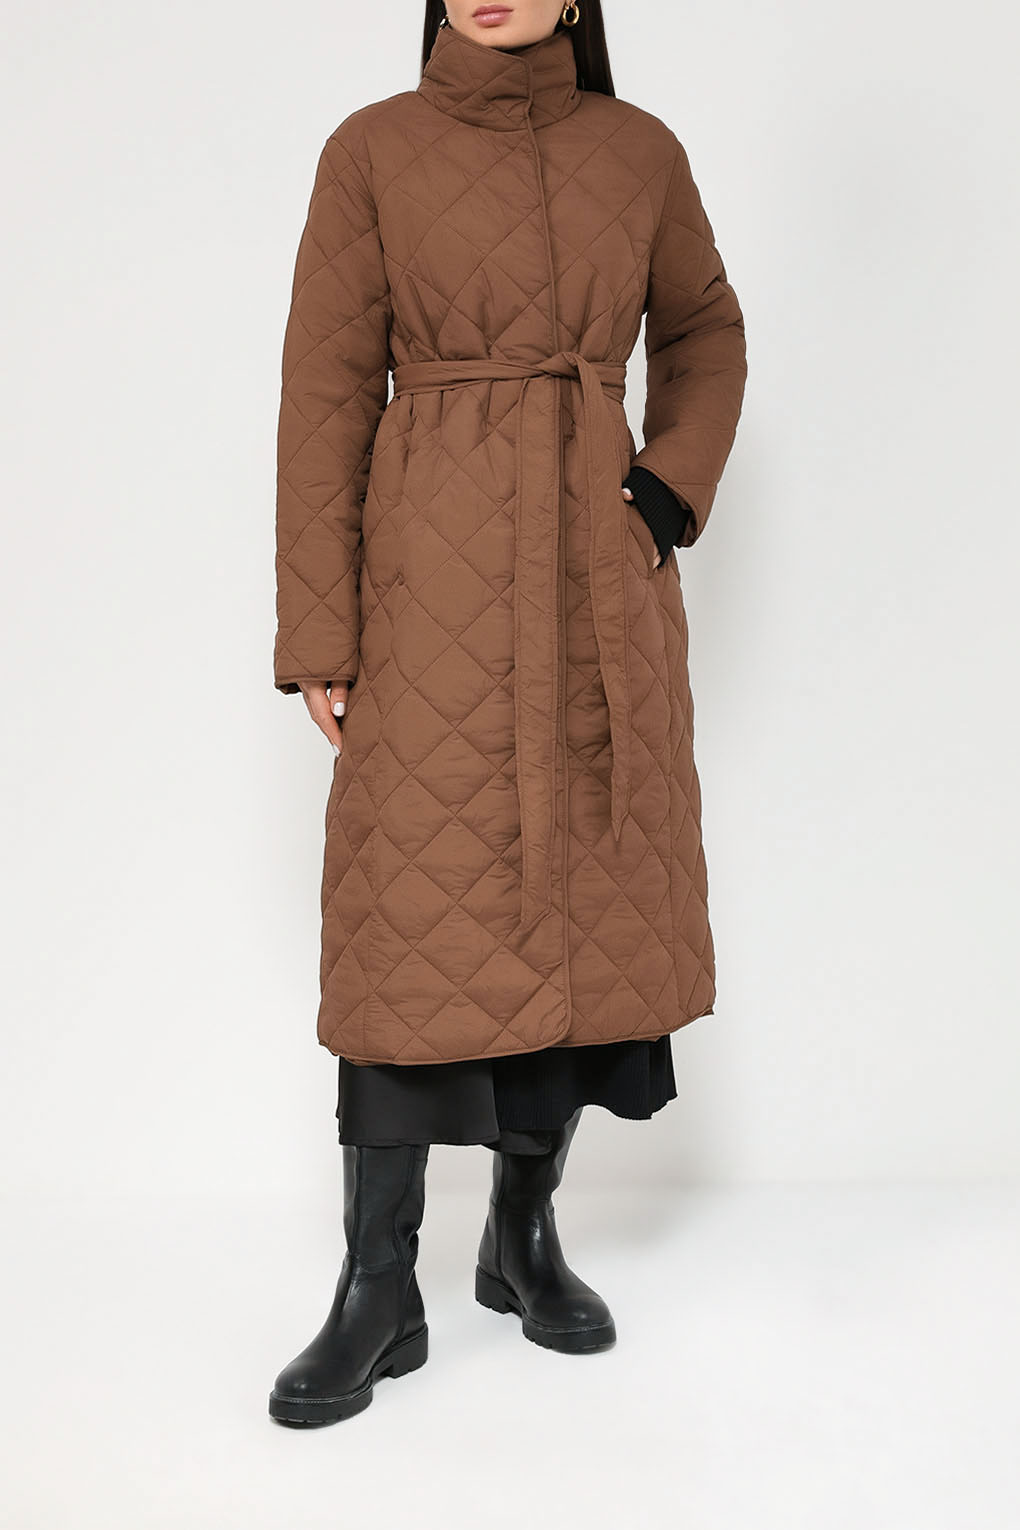 Пальто женское Auranna AU23106266CD коричневое 44